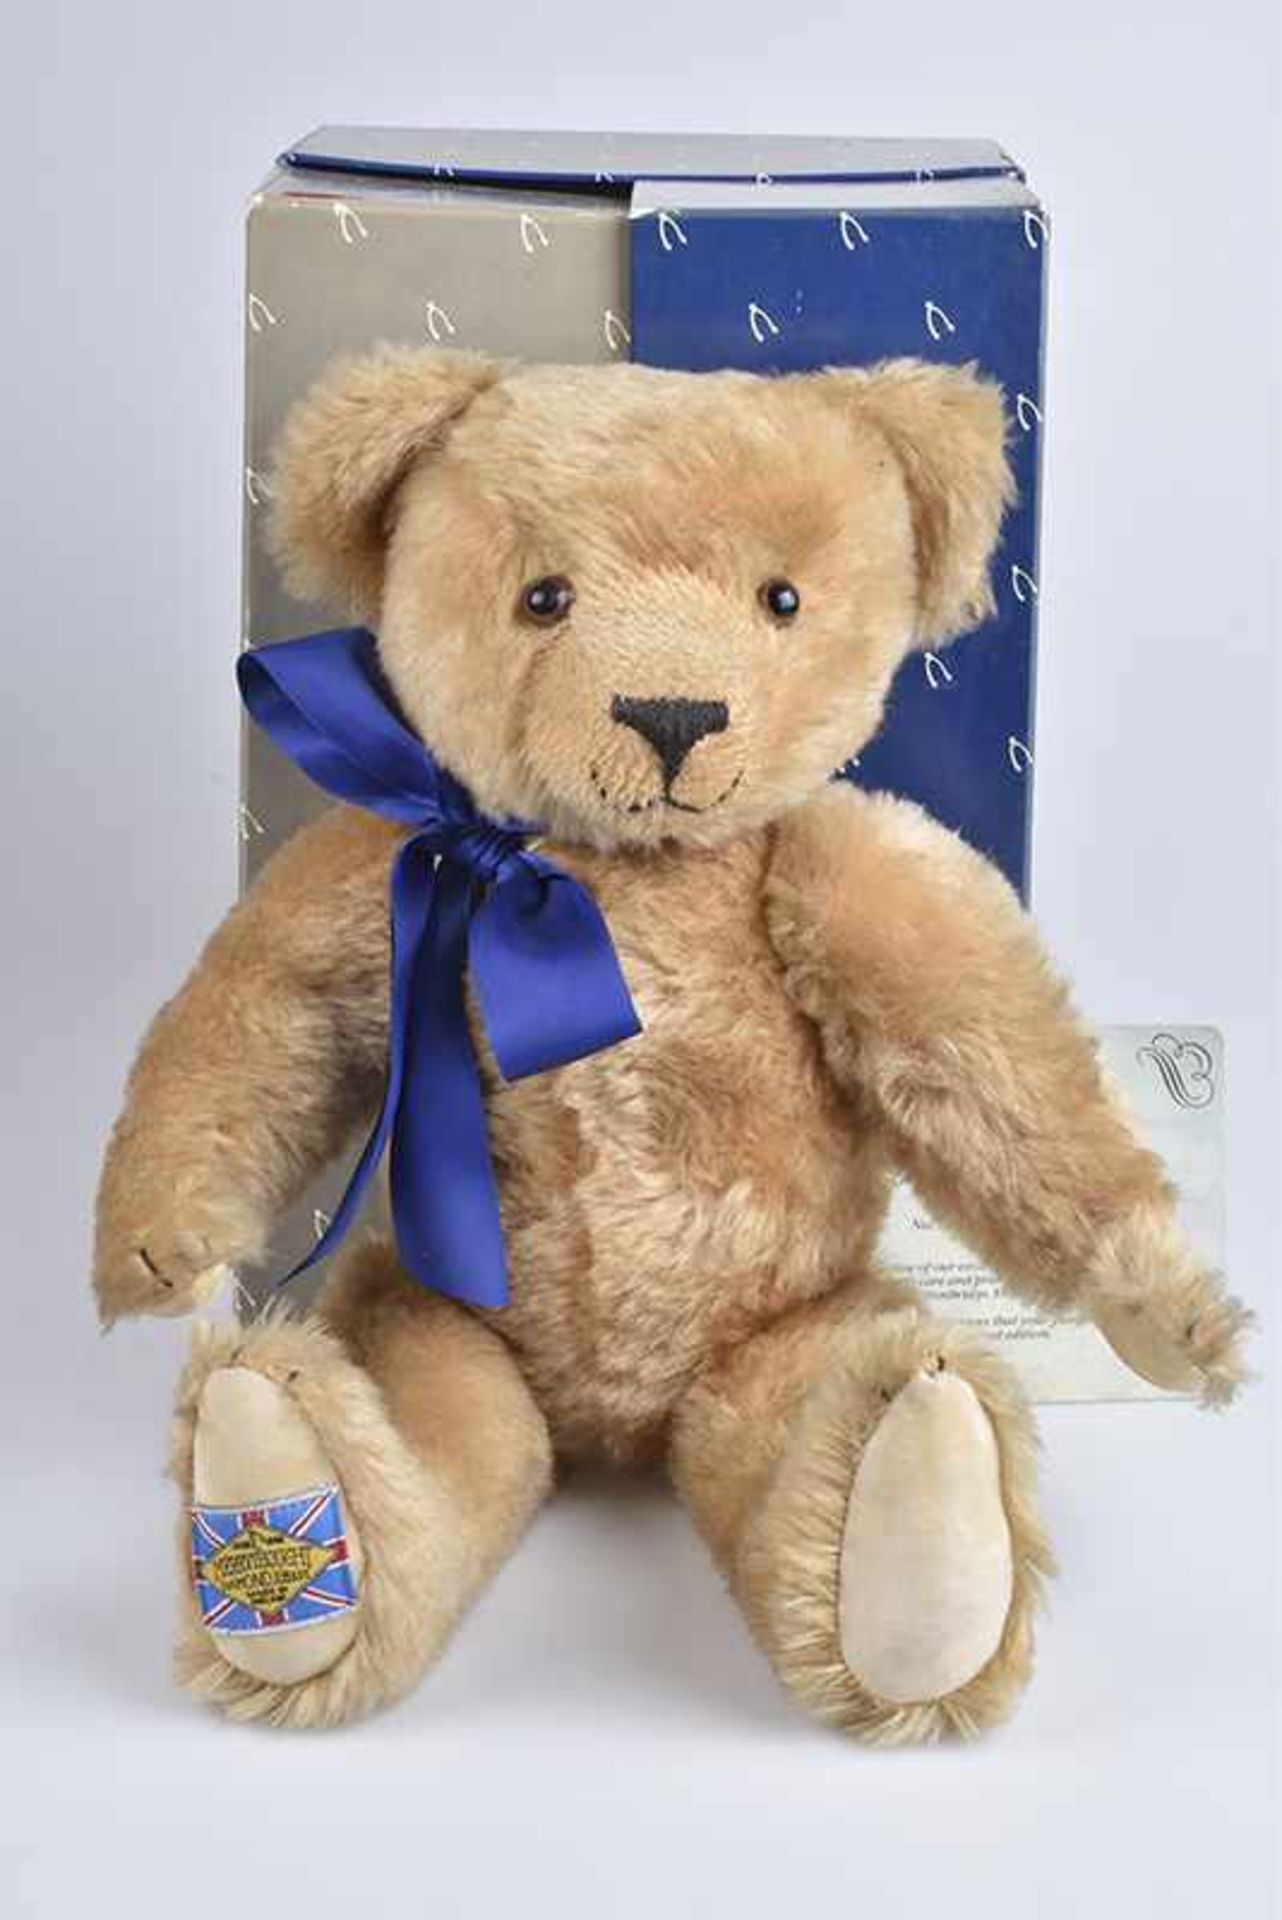 MERRYTHOUGHT Jubiliäumsbär 1930-1990, "Diamond Jubilee Bear", limitierte Auflage, mit Zertifikat